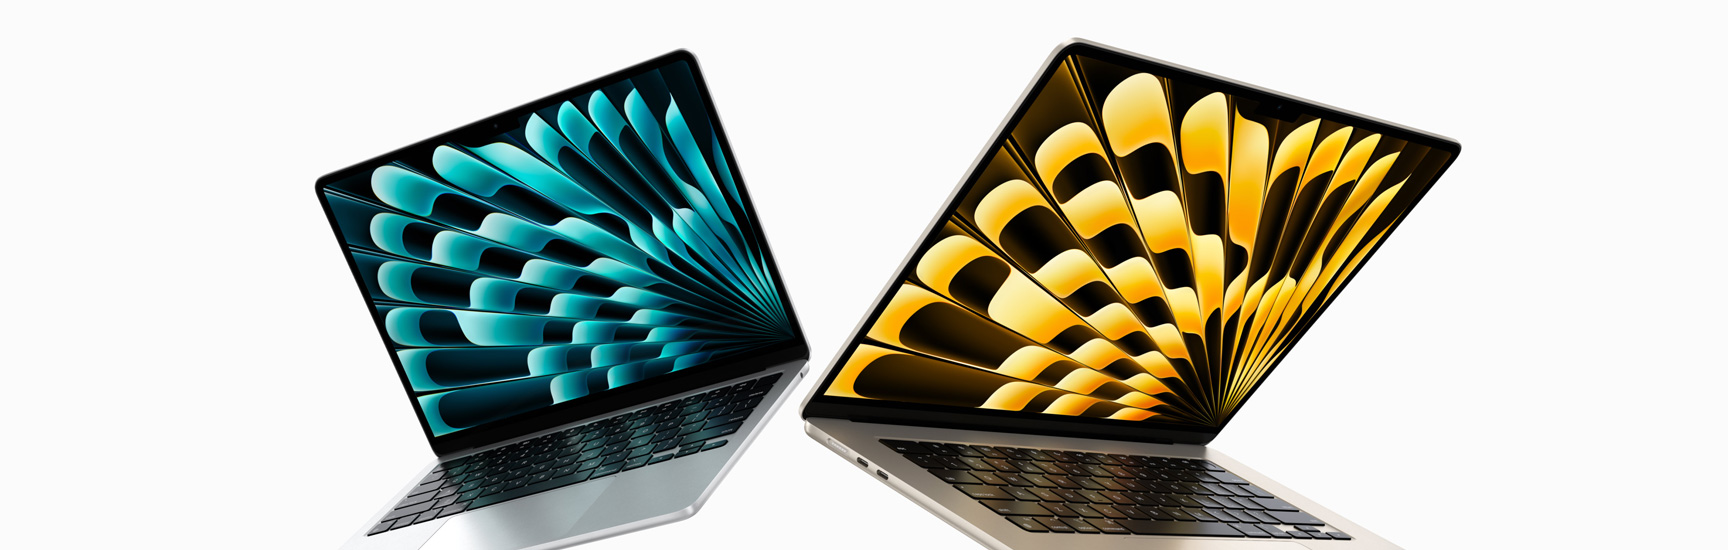 Vue avant d’un MacBook Air 13 pouces argent et d’un MacBook Air 15 pouces comète entrouverts montrant les différentes tailles d’écran.